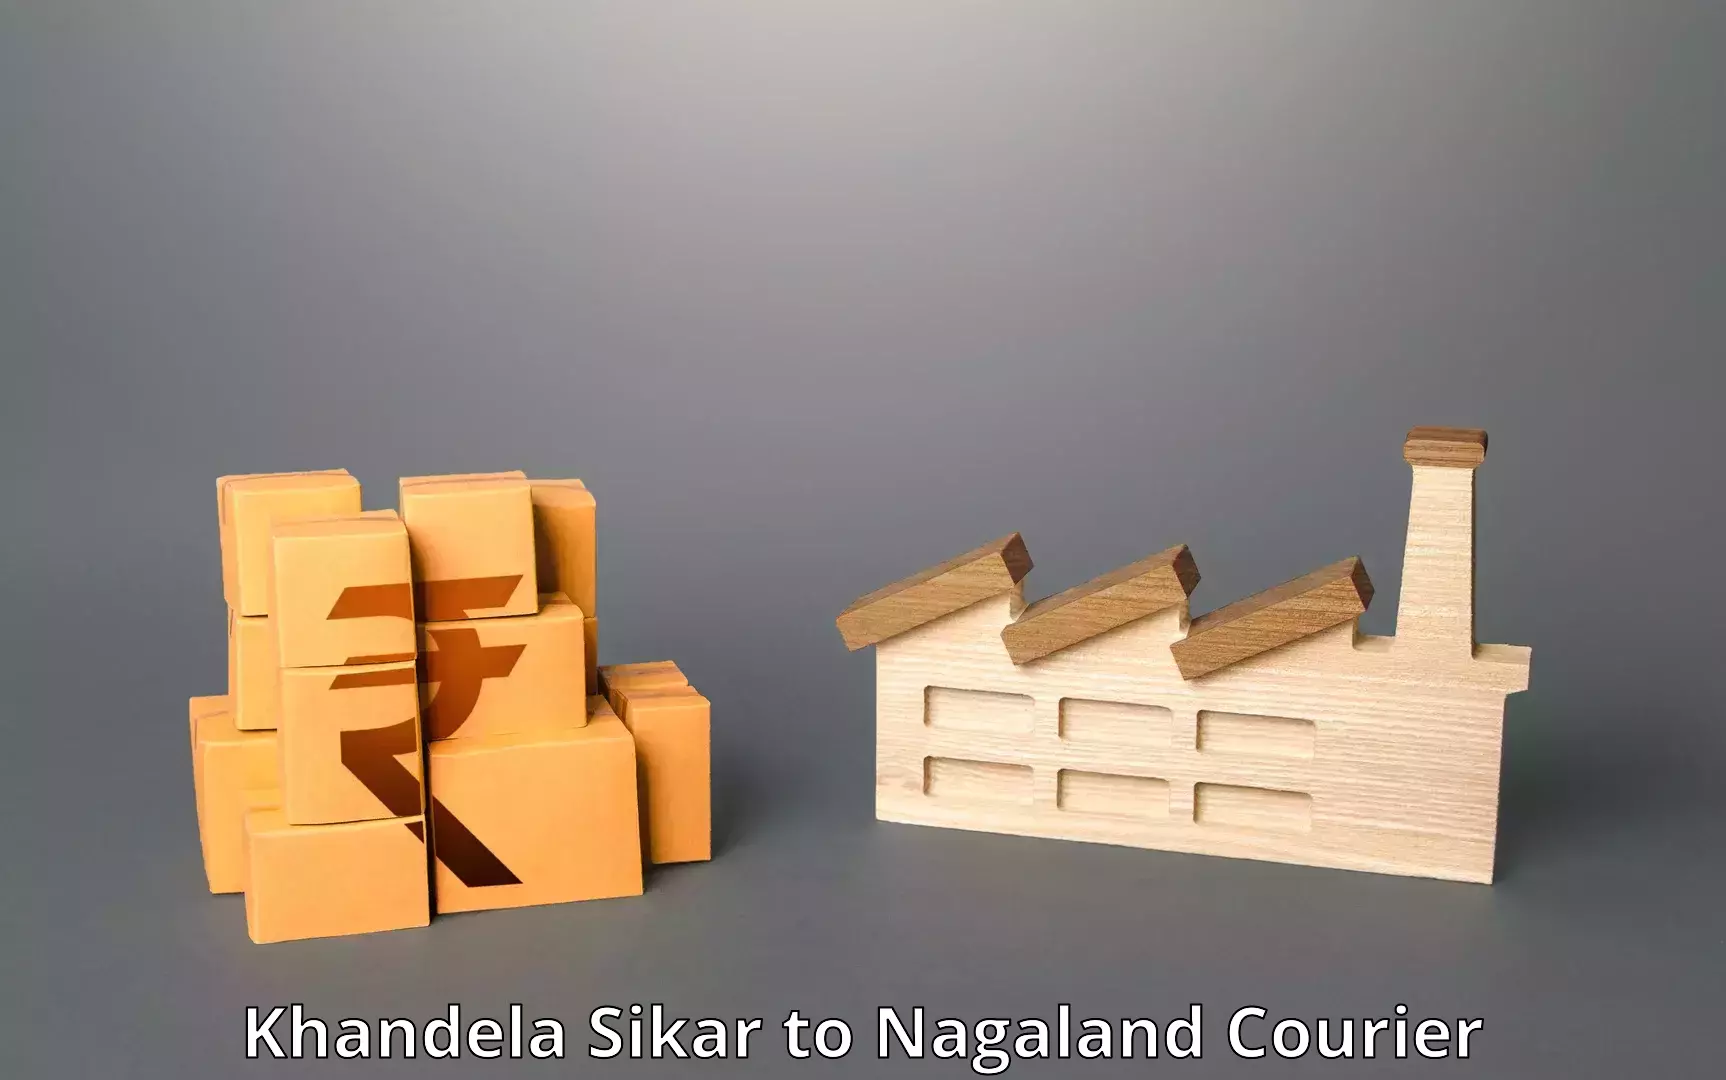 Efficient parcel service Khandela Sikar to Kohima